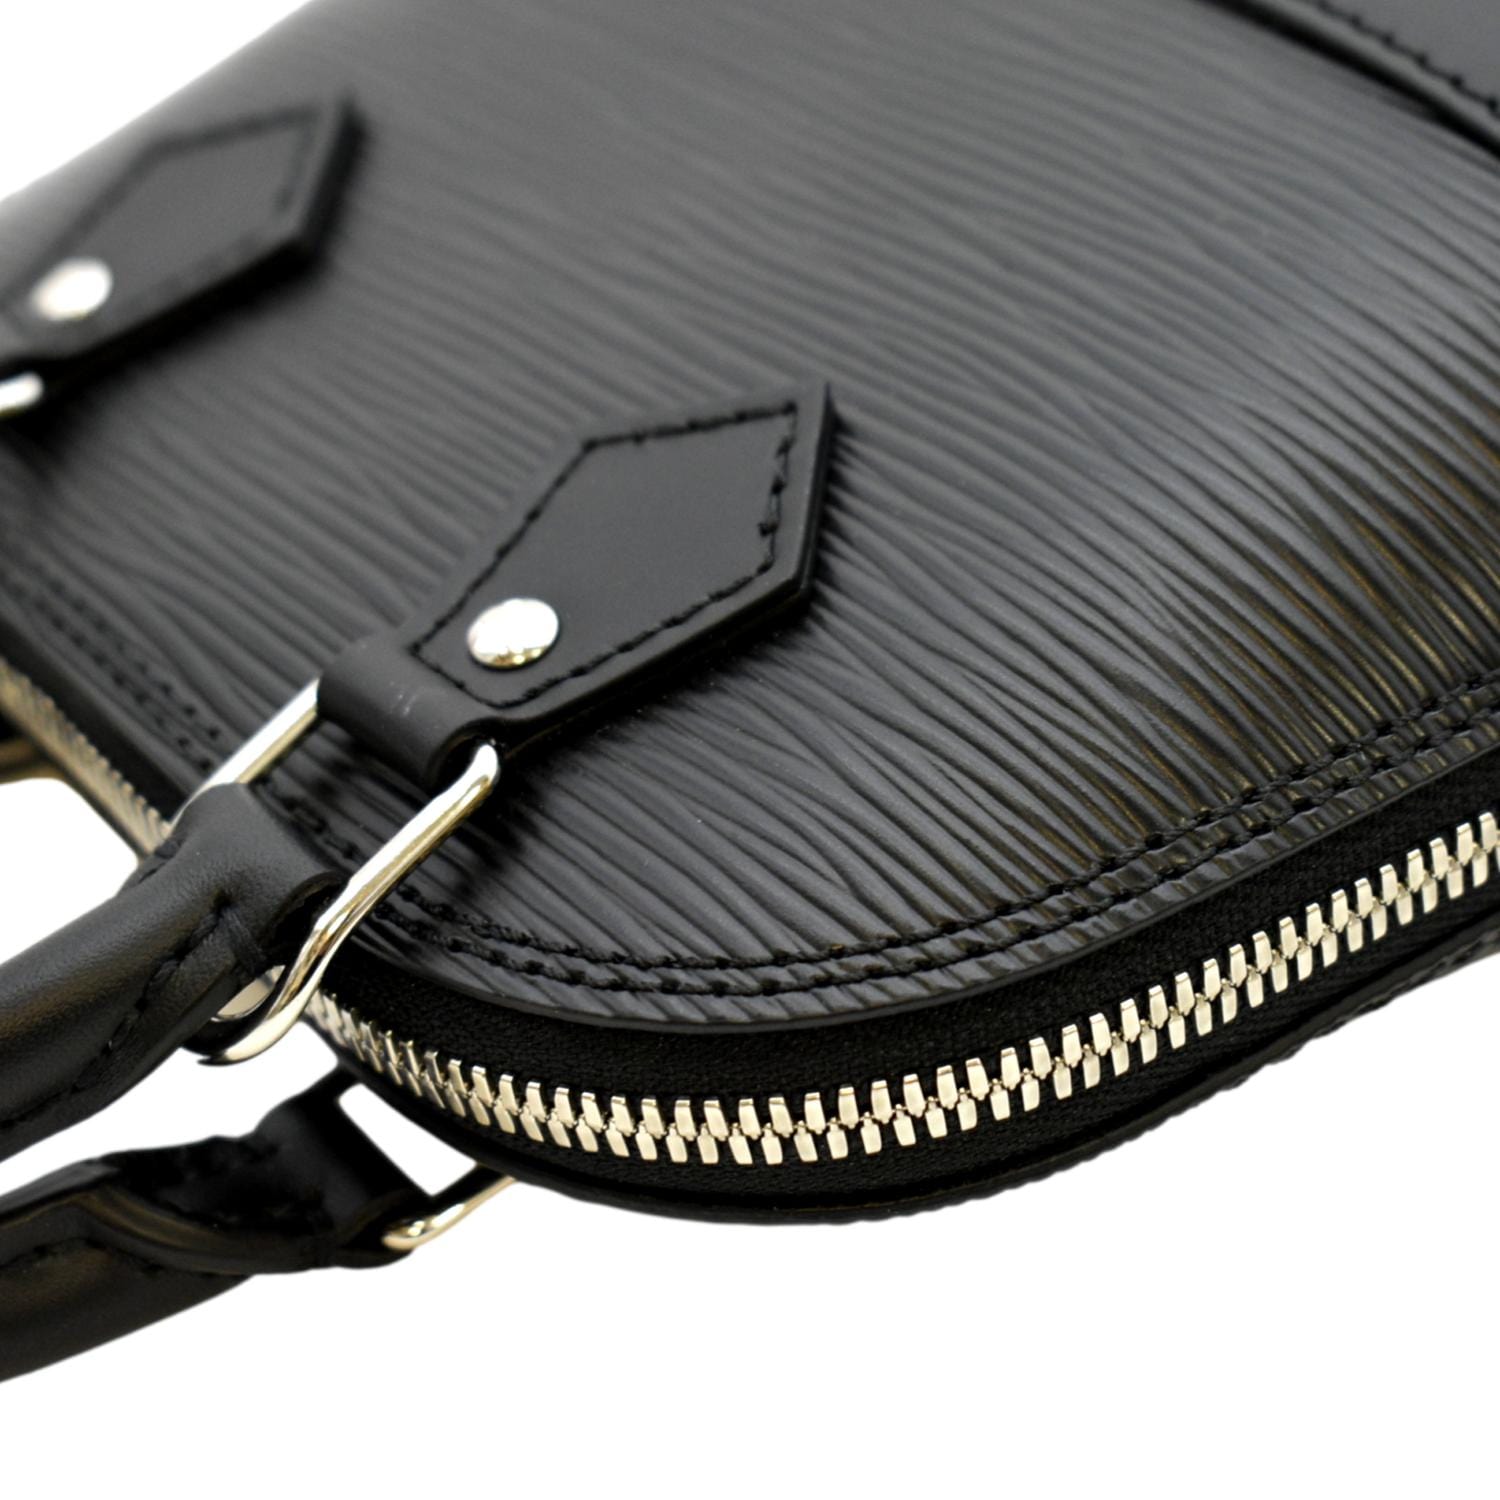 Louis Vuitton Alma Nano Epi Denim Leather